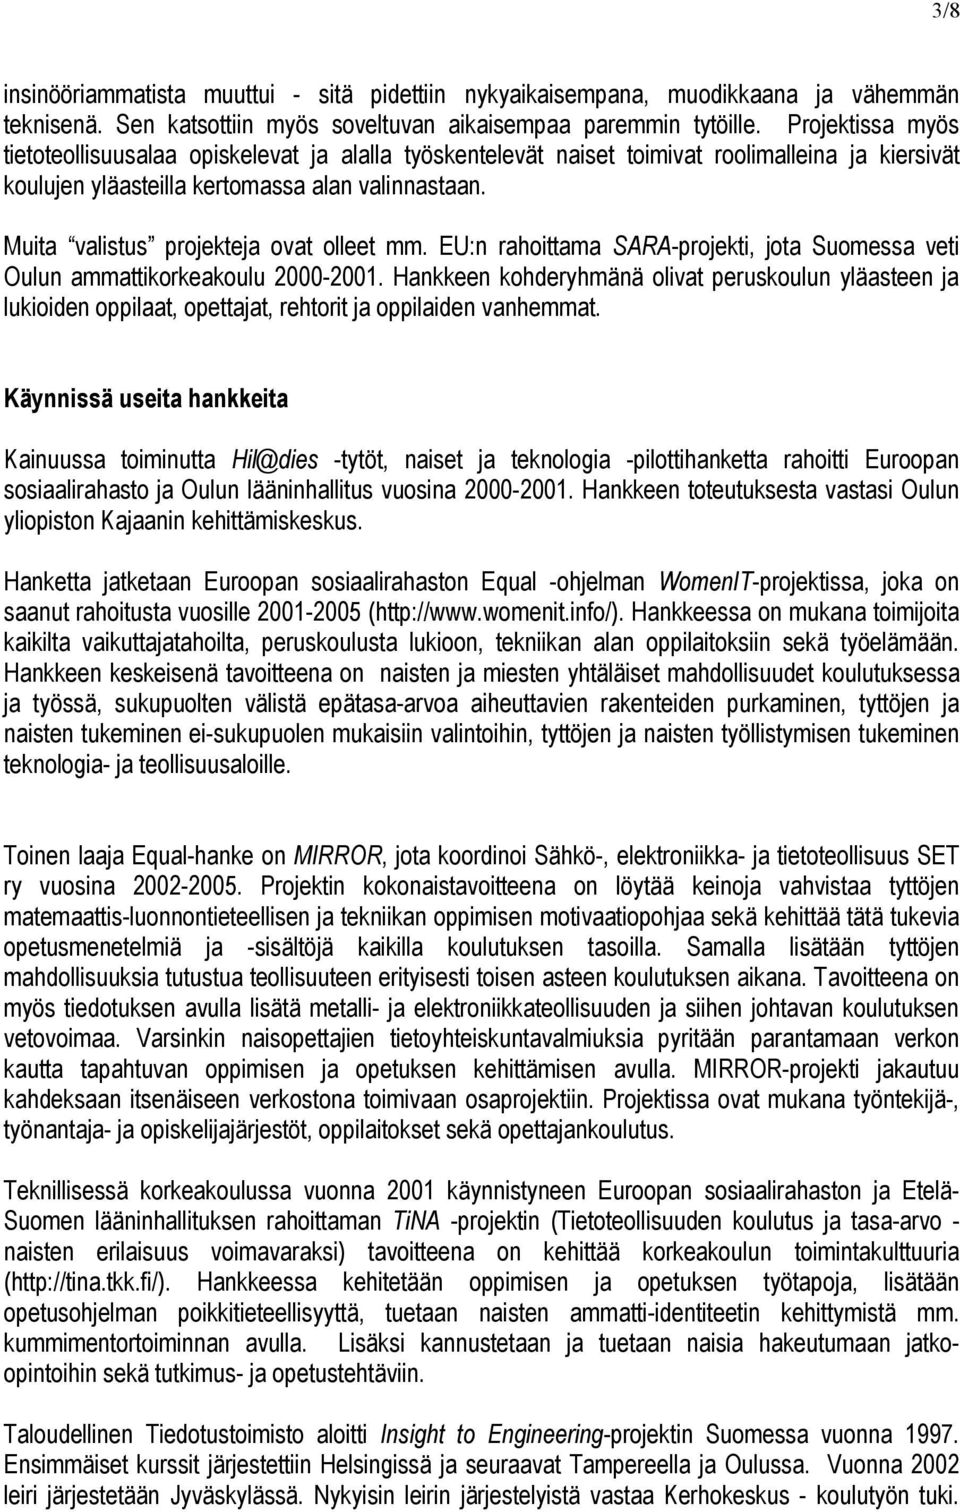 Muita valistus projekteja ovat olleet mm. EU:n rahoittama SARA-projekti, jota Suomessa veti Oulun ammattikorkeakoulu 2000-2001.